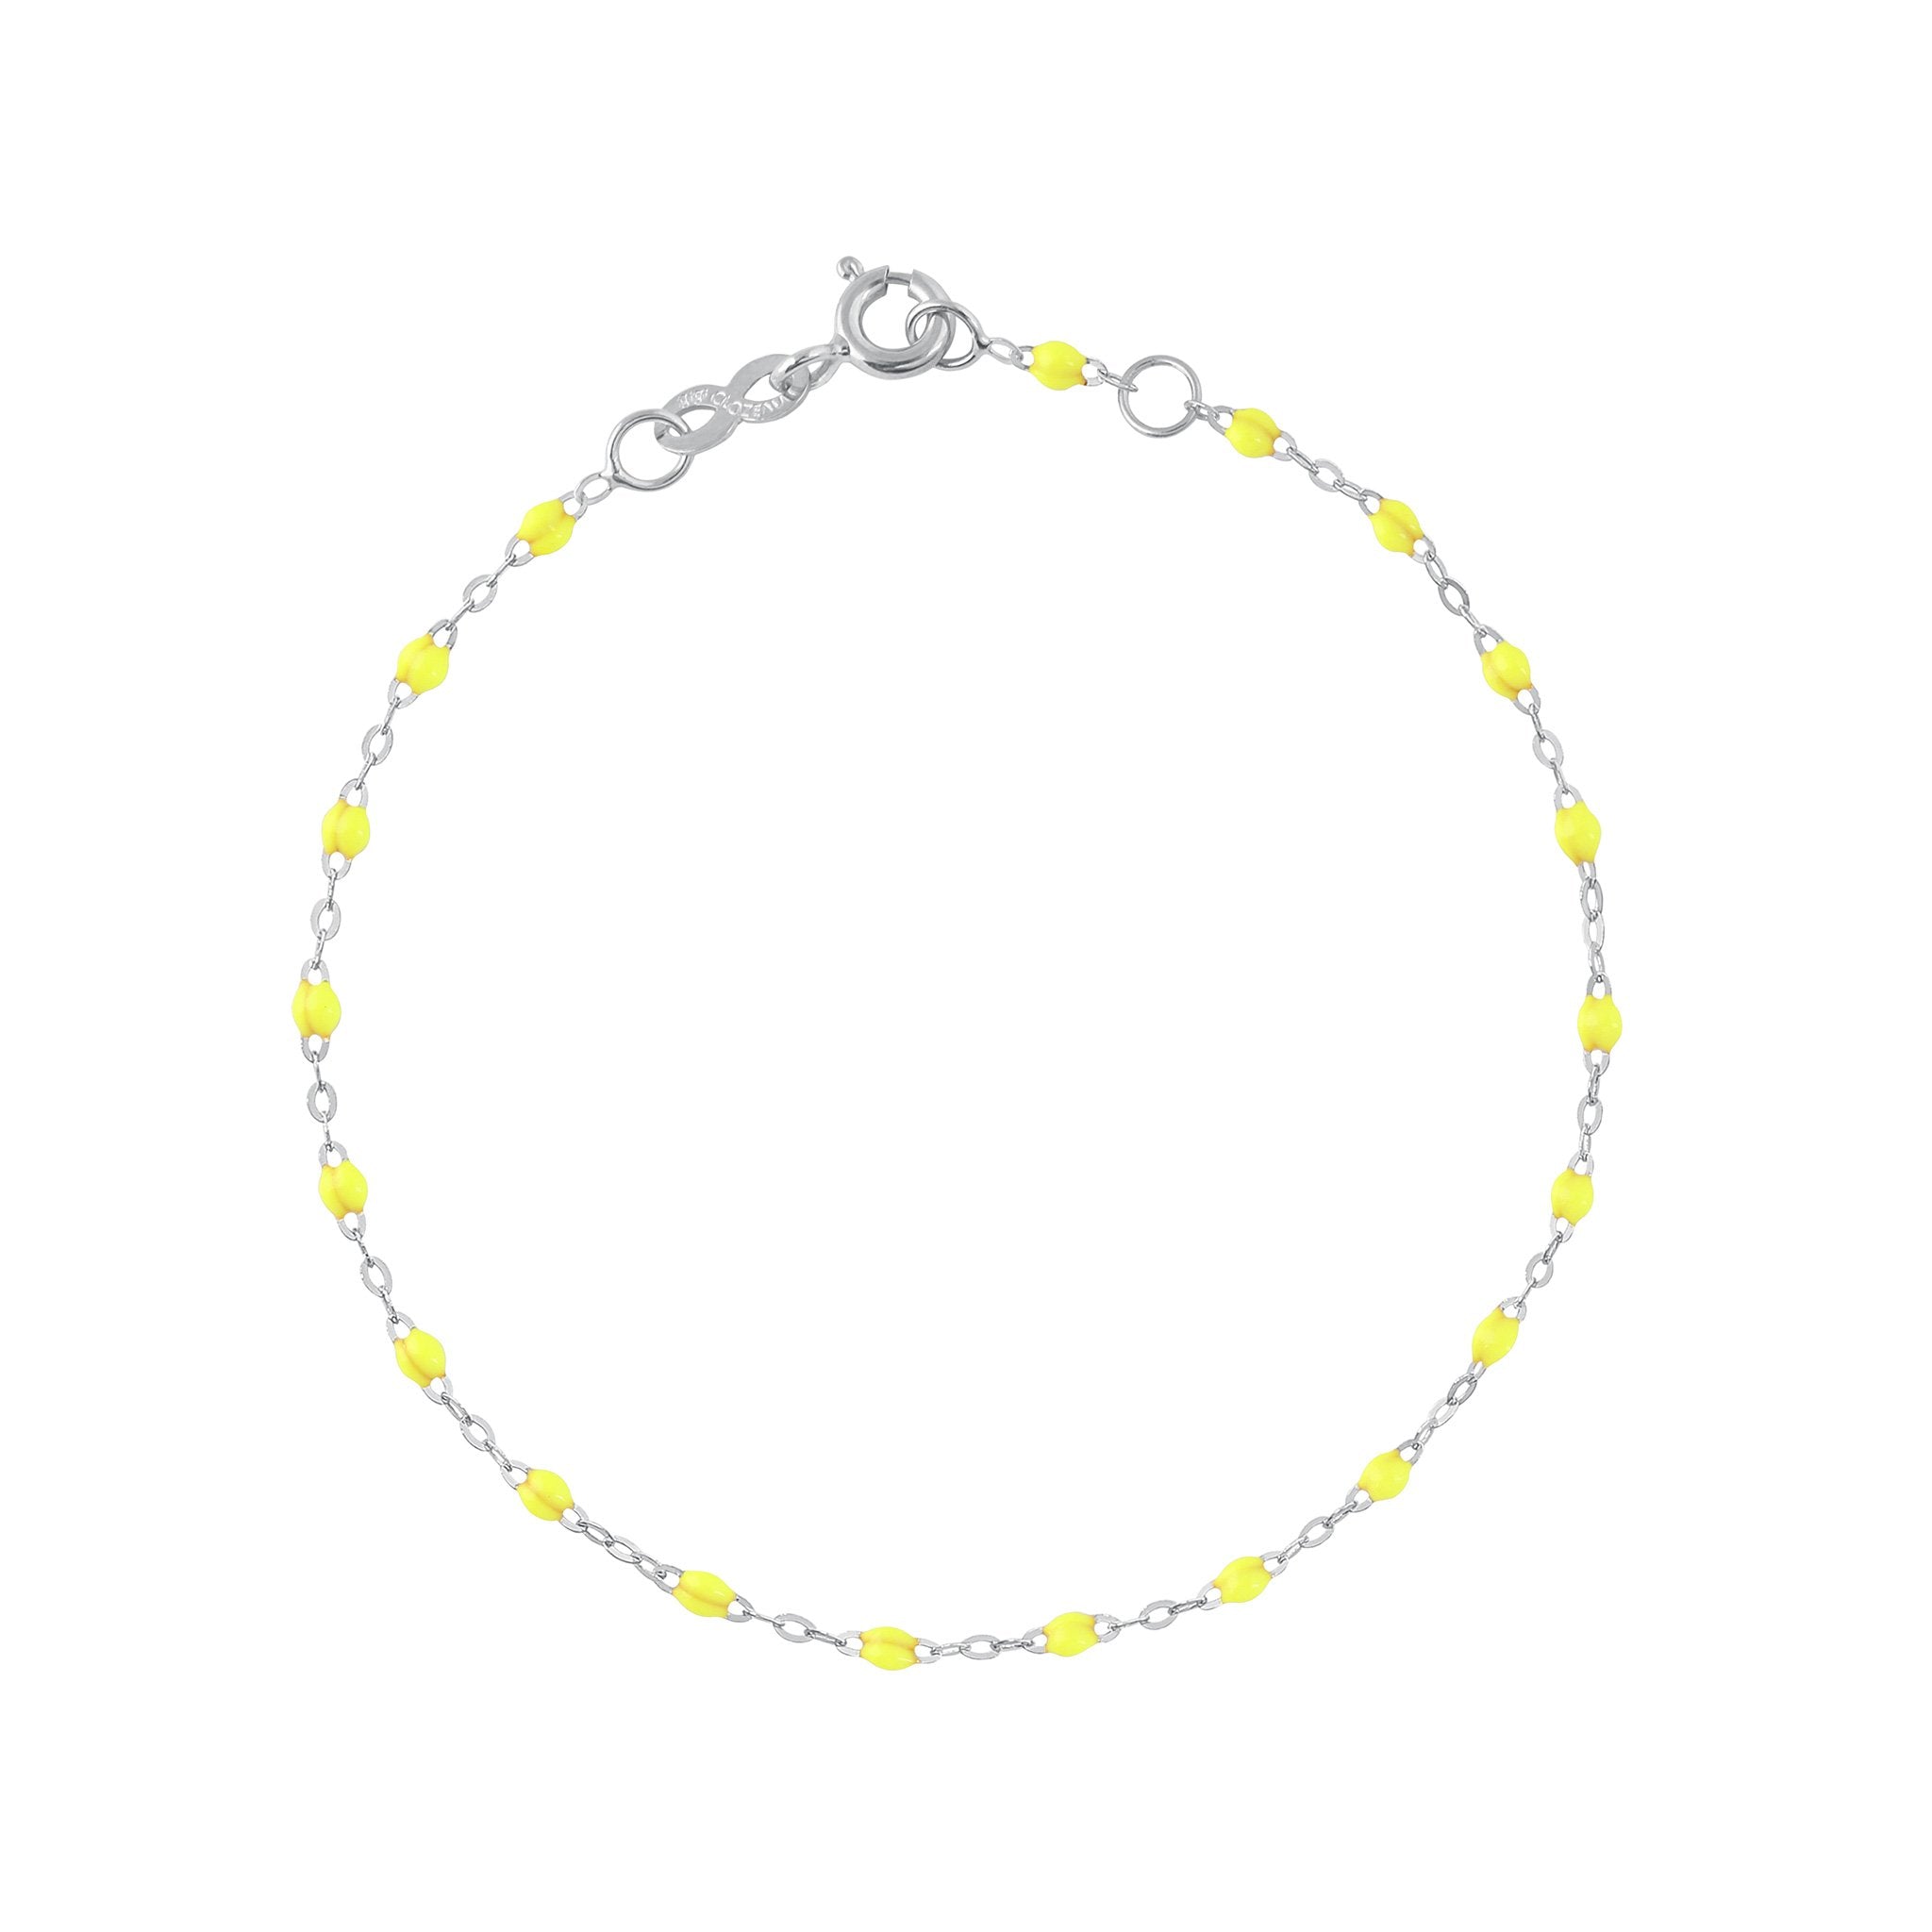 Bracelet jaune fluo Classique Gigi, or blanc, 15 cm classique gigi Référence :  b3gi001g1815xx -1